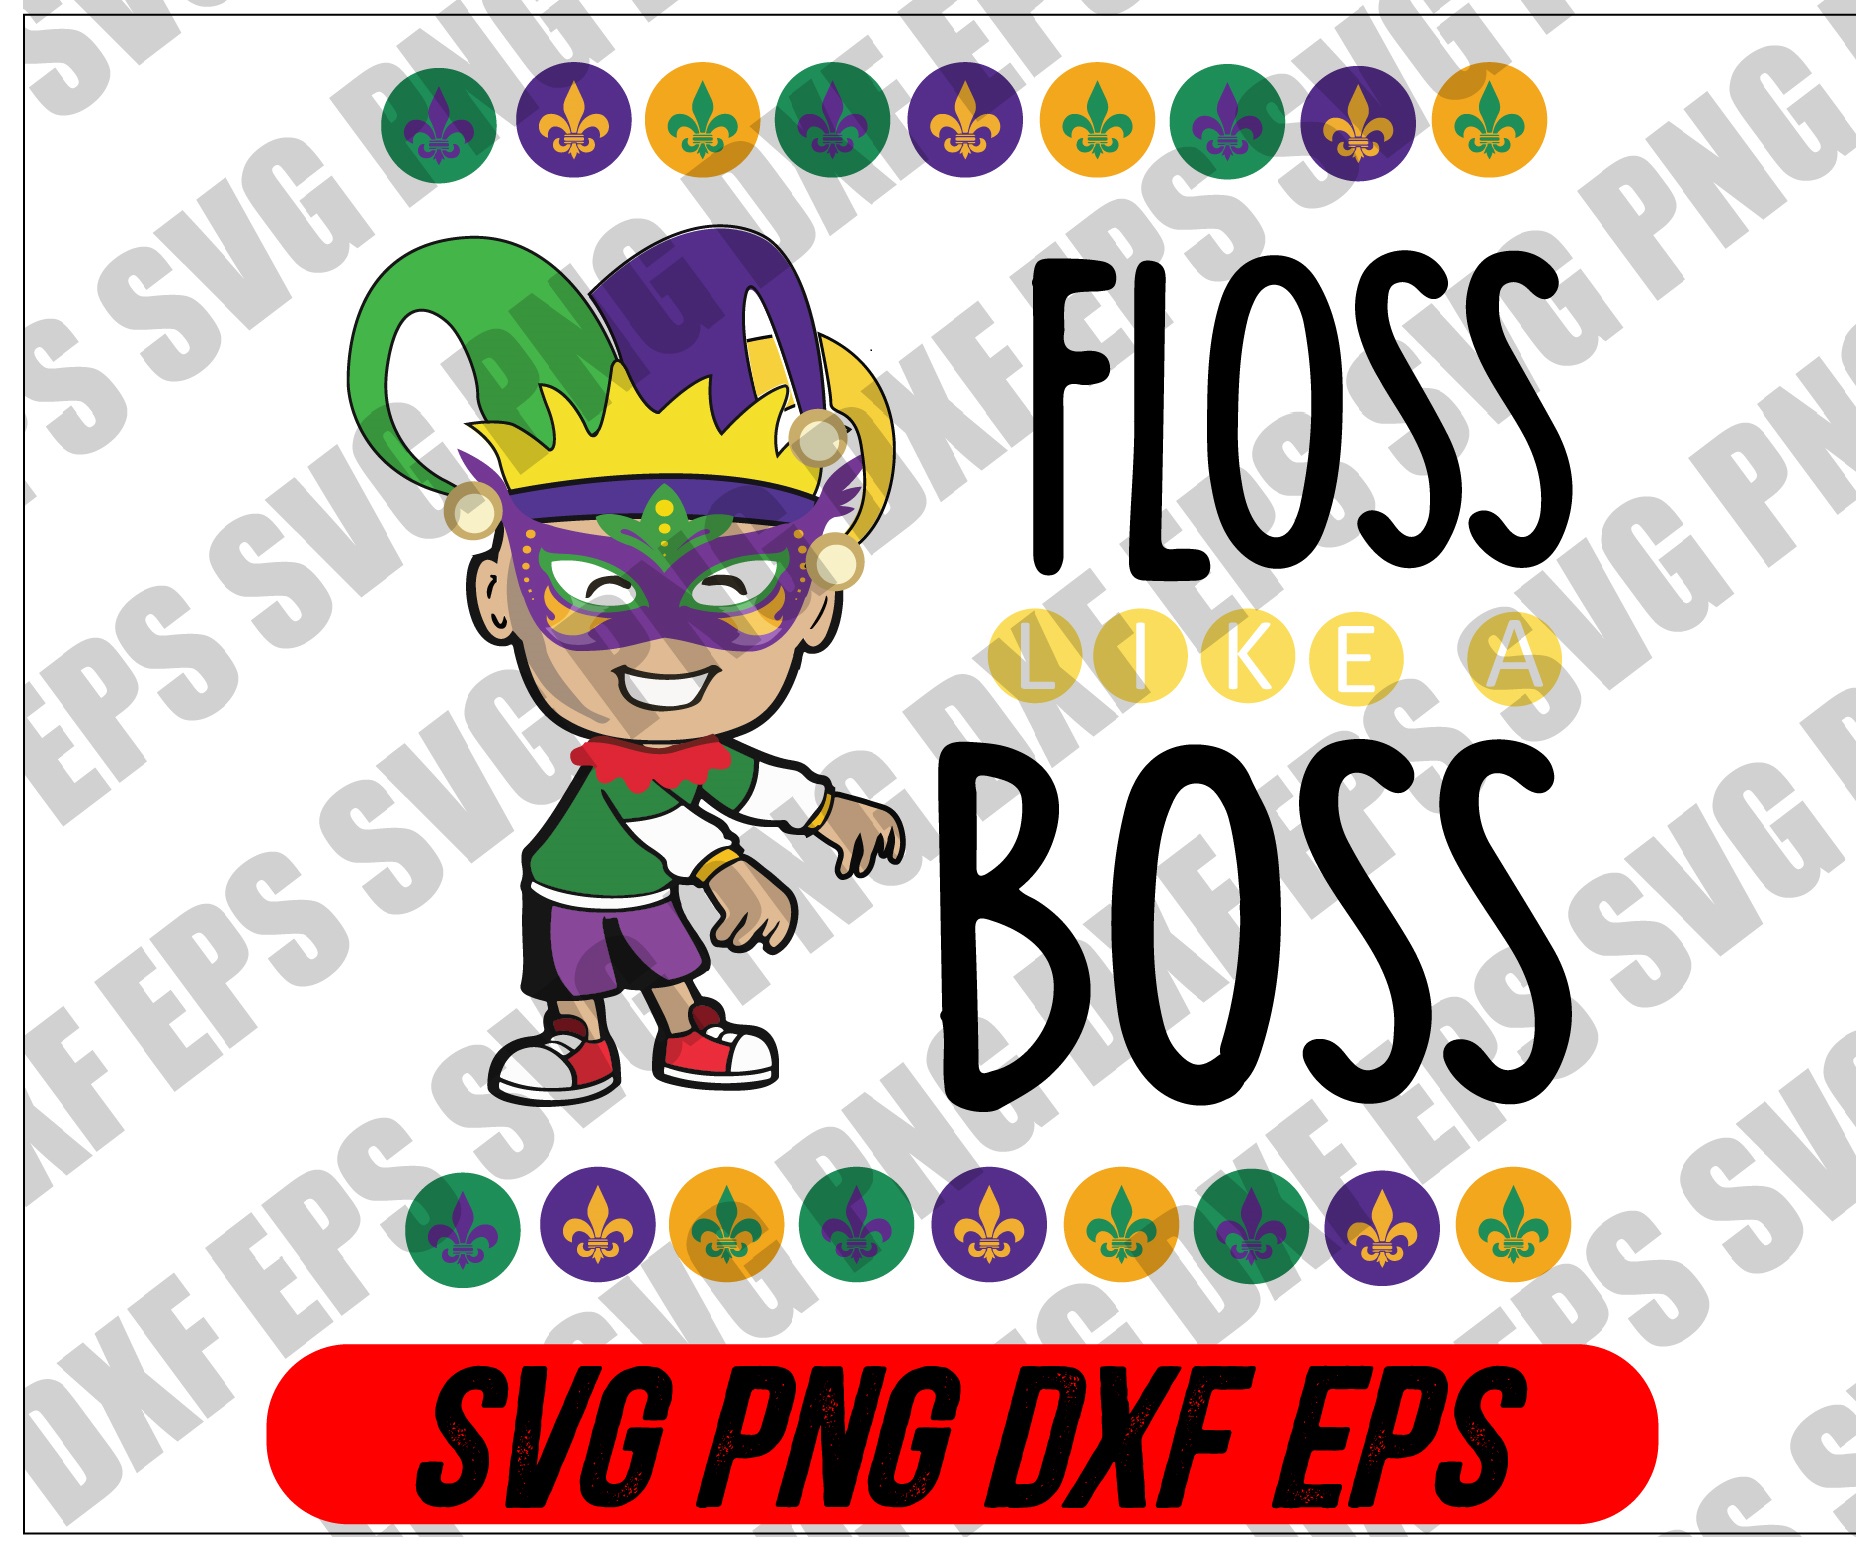 file wtm 01 Mardi Gras SVG - Floss boss svg, png, dxf, eps digital download